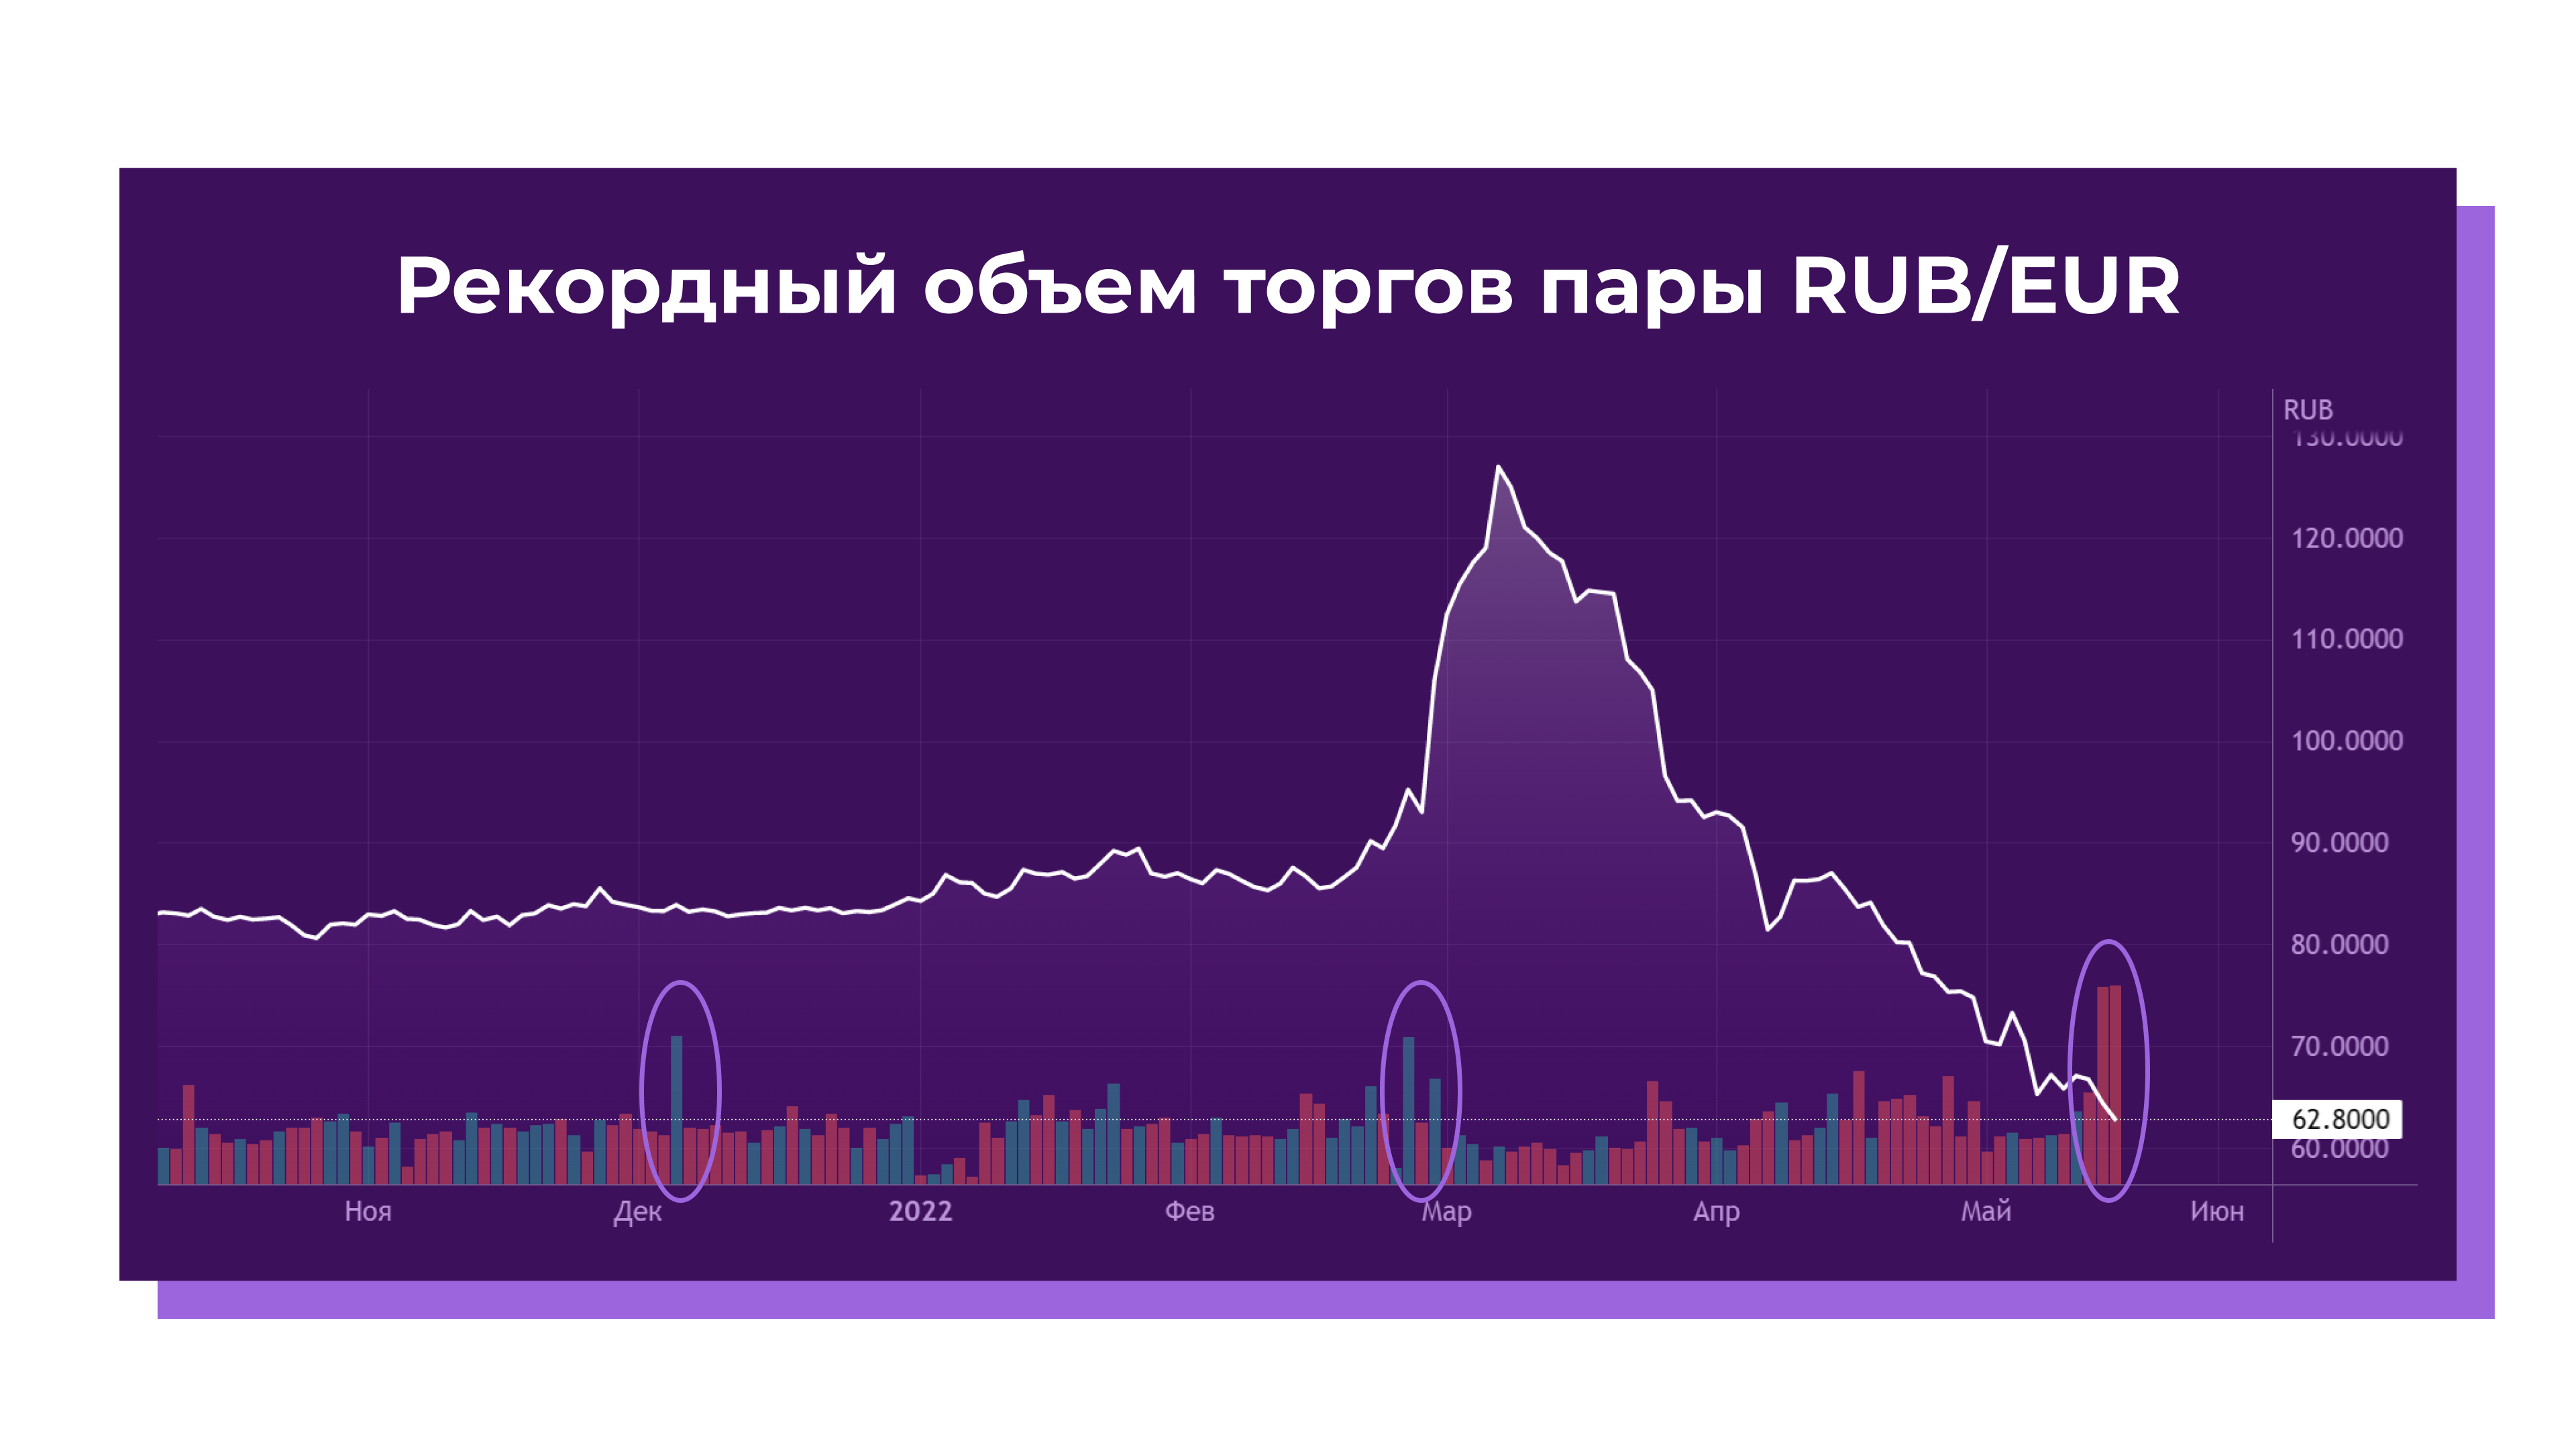 Пара RUB-EUR на Мосбирже зафиксировала в четверг рекордный объем торгов